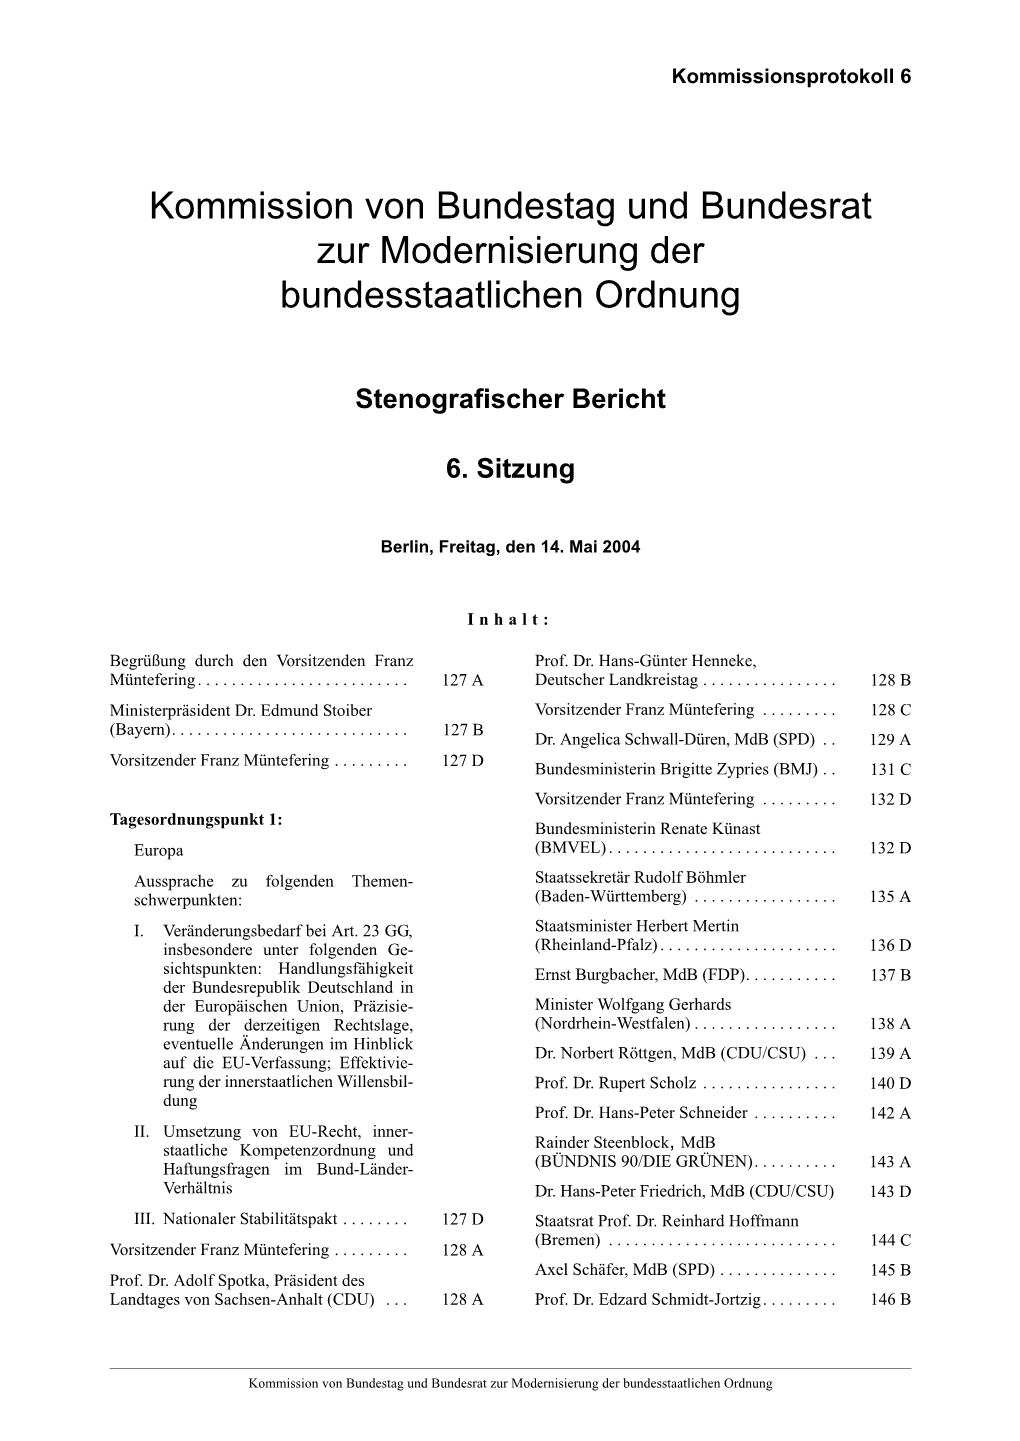 Kommission Von Bundestag Und Bundesrat Zur Modernisierung Der Bundesstaatlichen Ordnung